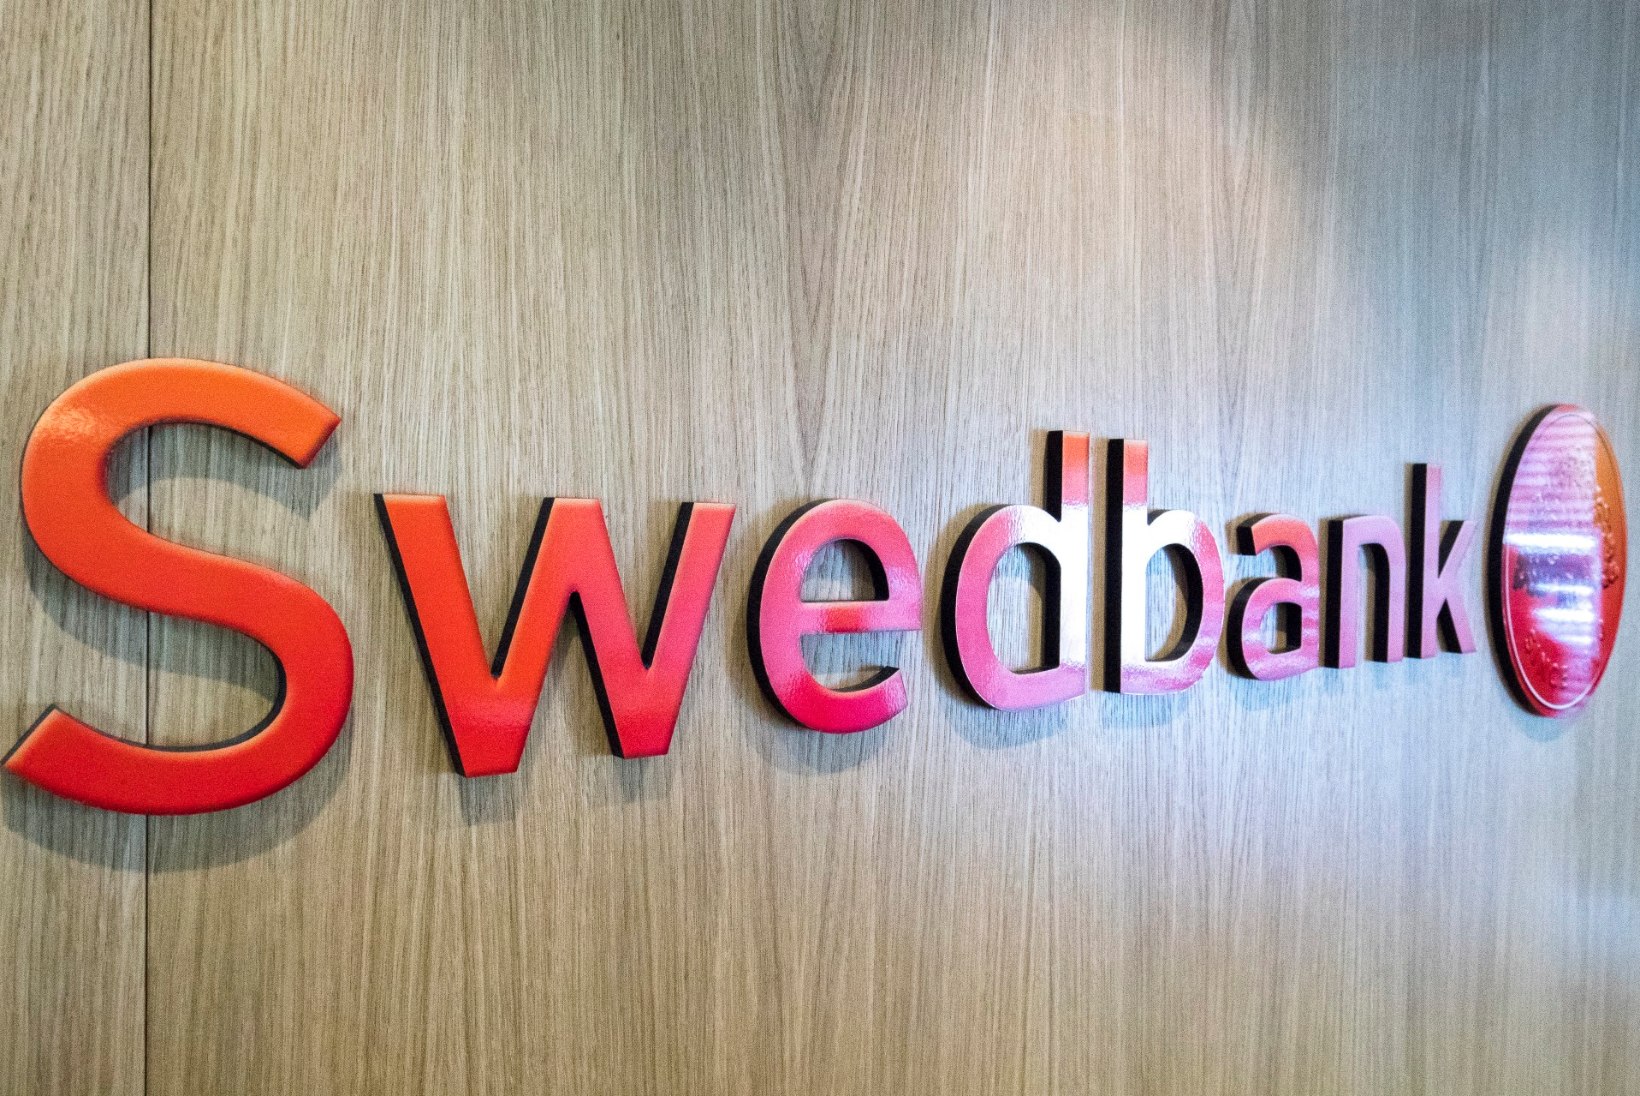 TELLERI PROHMAKAS: Swedbank kasseeris kliendilt eraldi teenustasu sularaha ja müntide eest